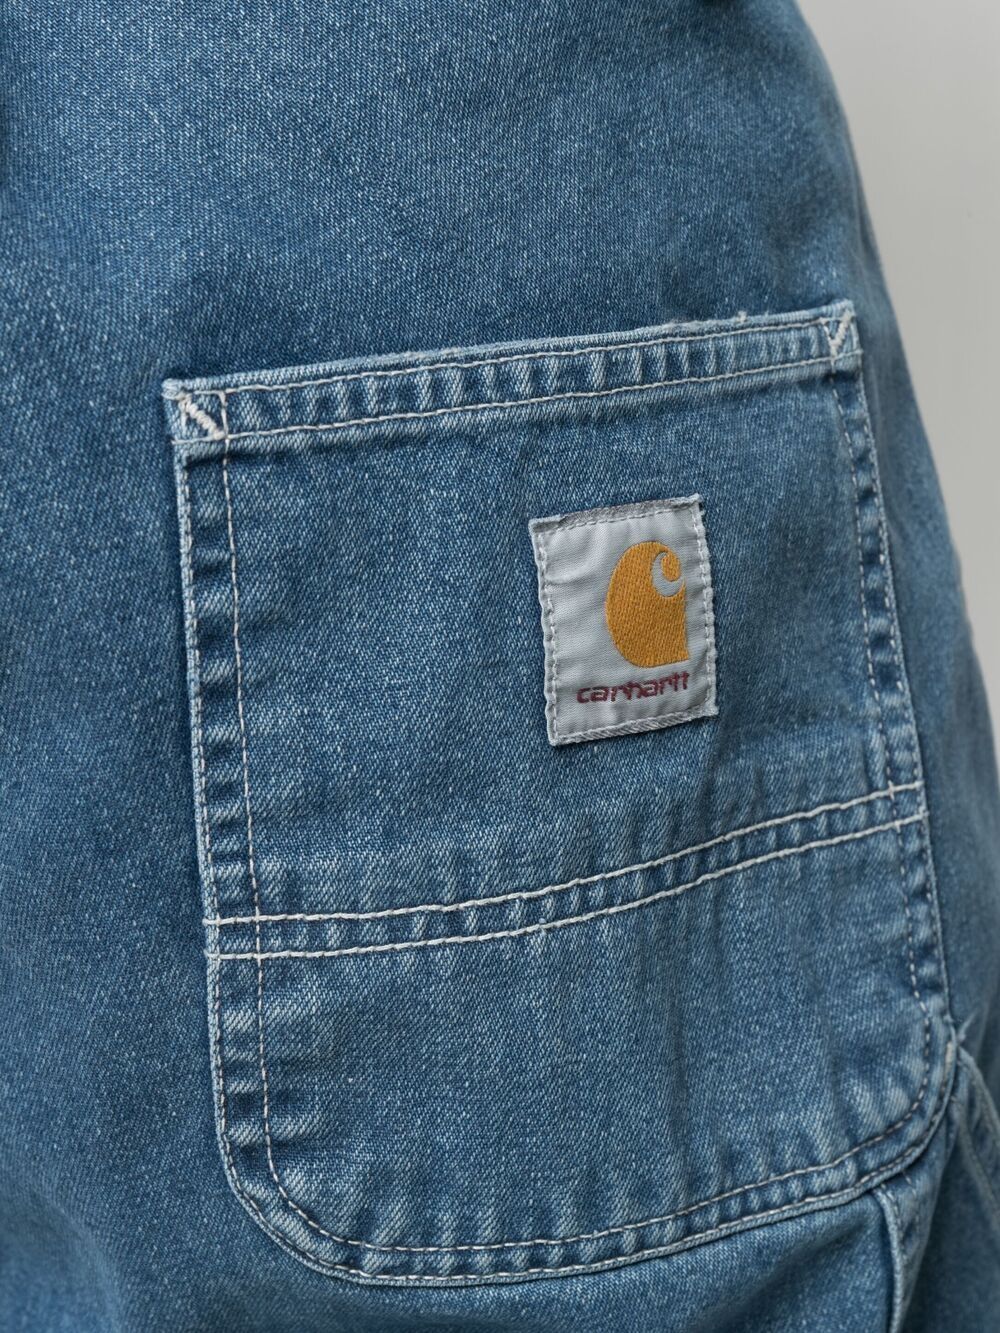 фото Carhartt wip джинсы свободного кроя